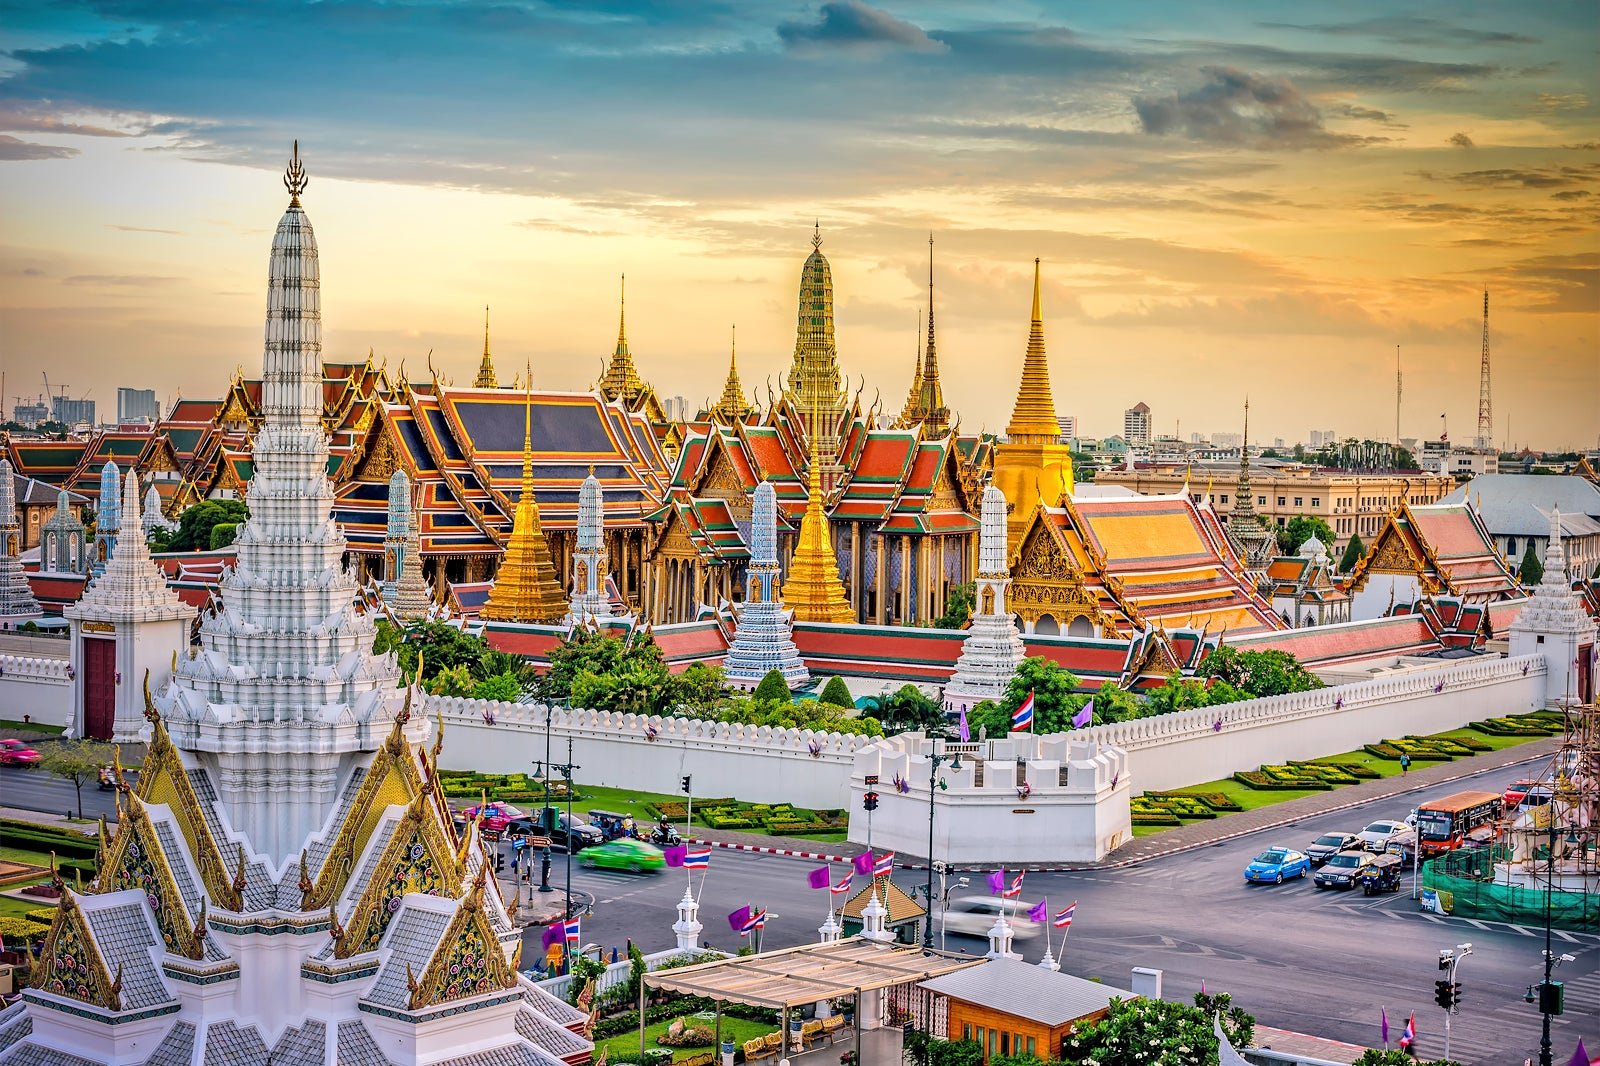 Grand Palace di Bangkok, Thailand